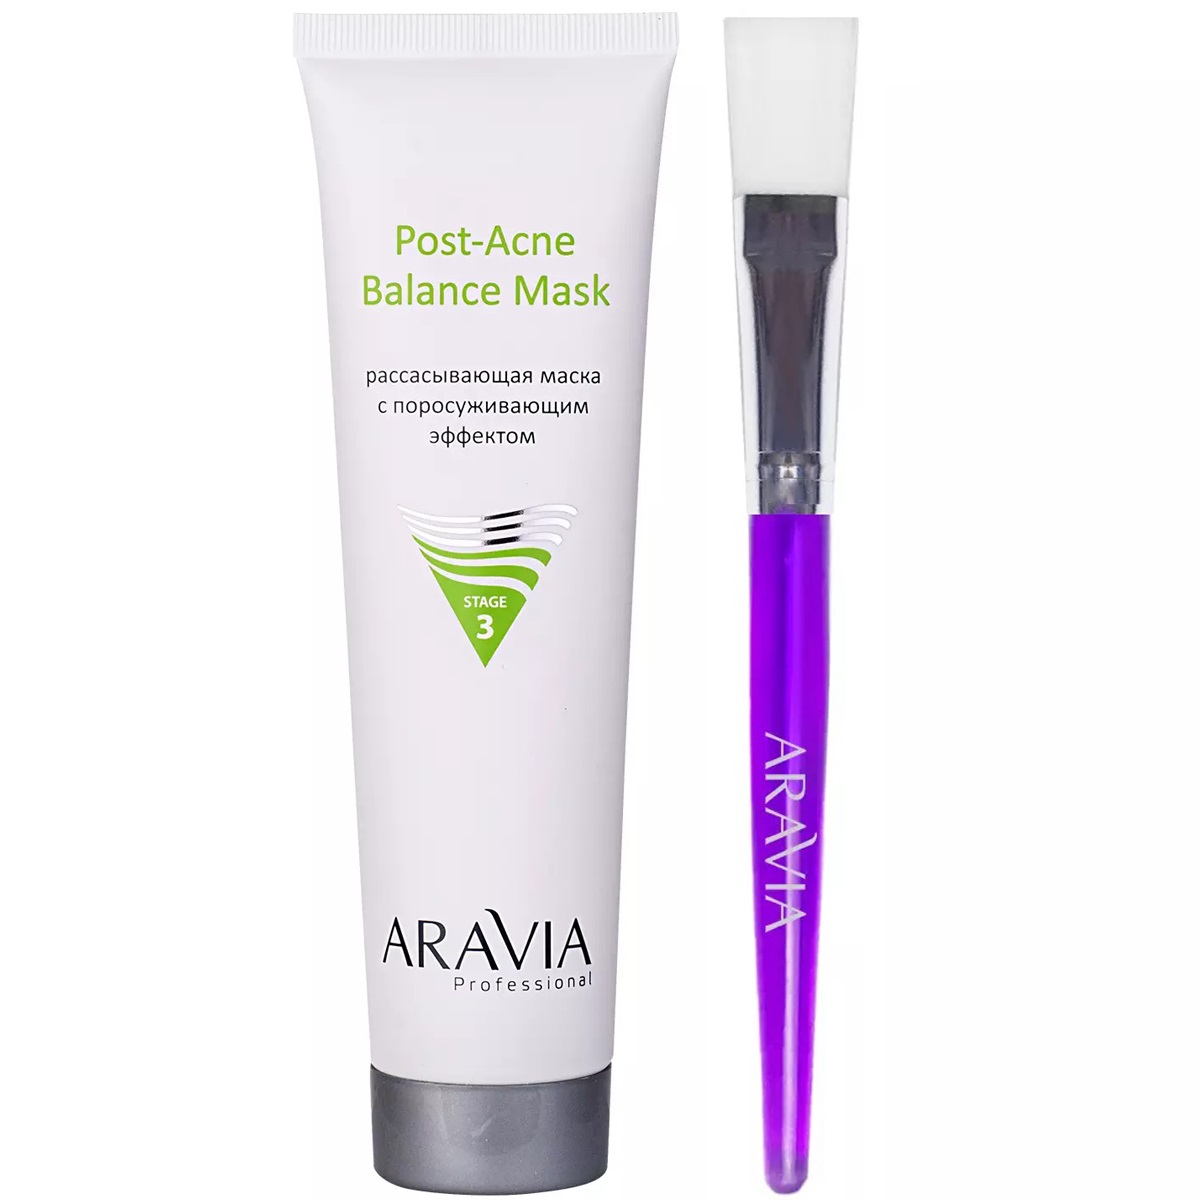 Aravia Professional Набор для проблемной и жирной кожи: маска, 100 мл + кисть для нанесения масок, 1 шт (Aravia Professional, Уход за лицом)